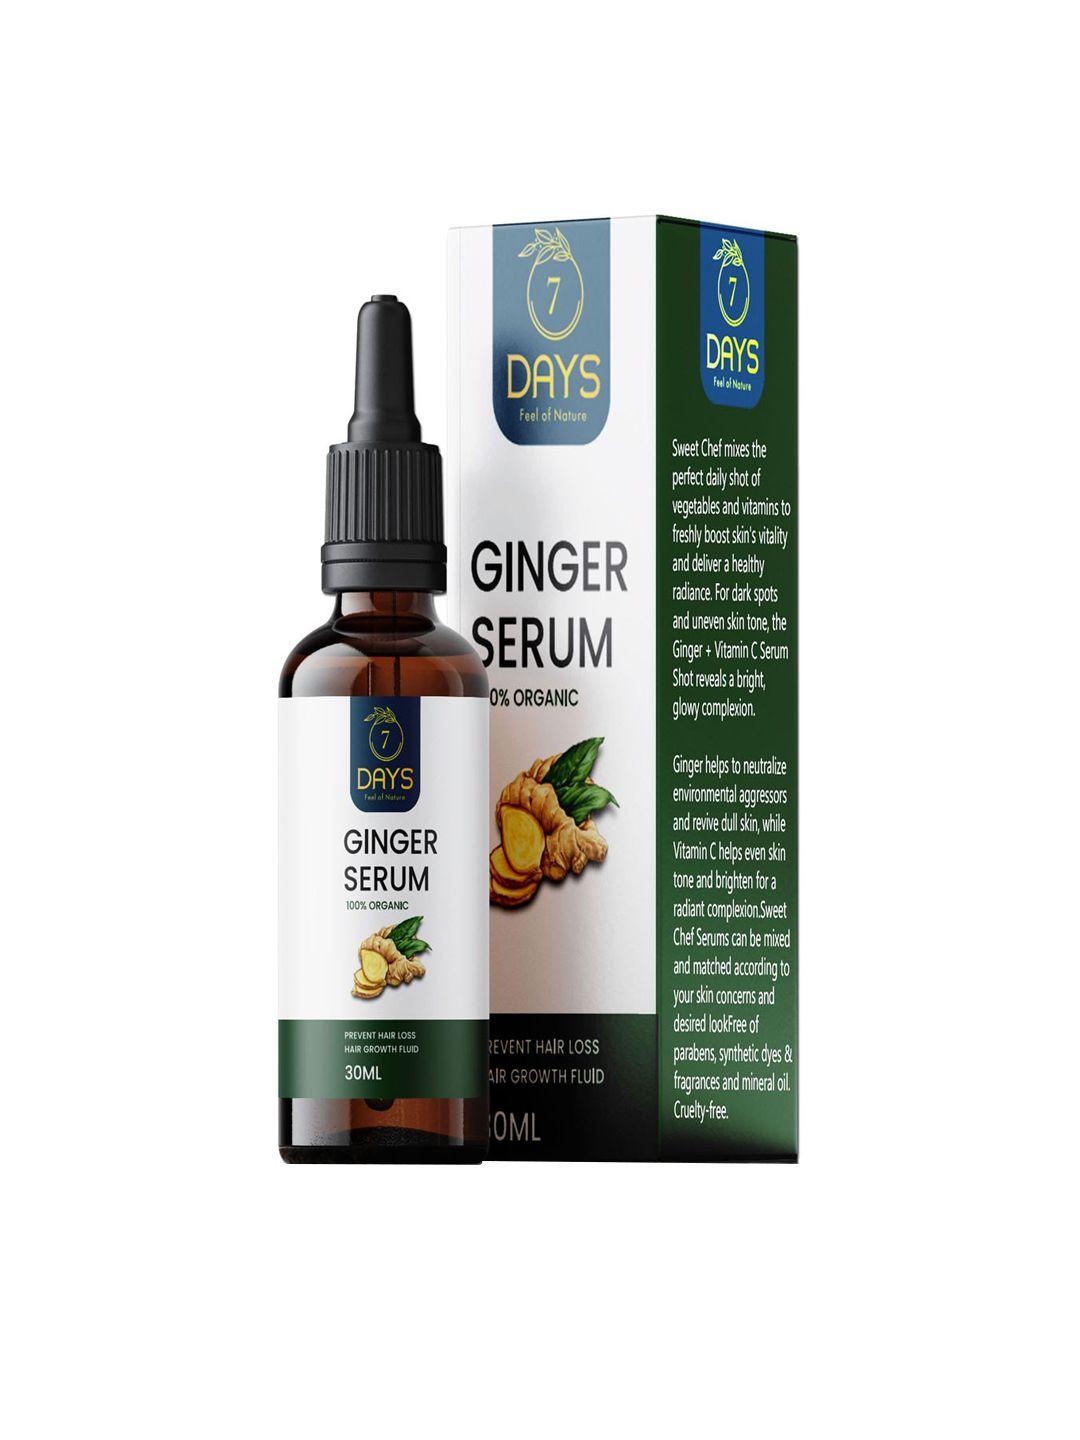 7 days organic ginger hair serum - 30ml